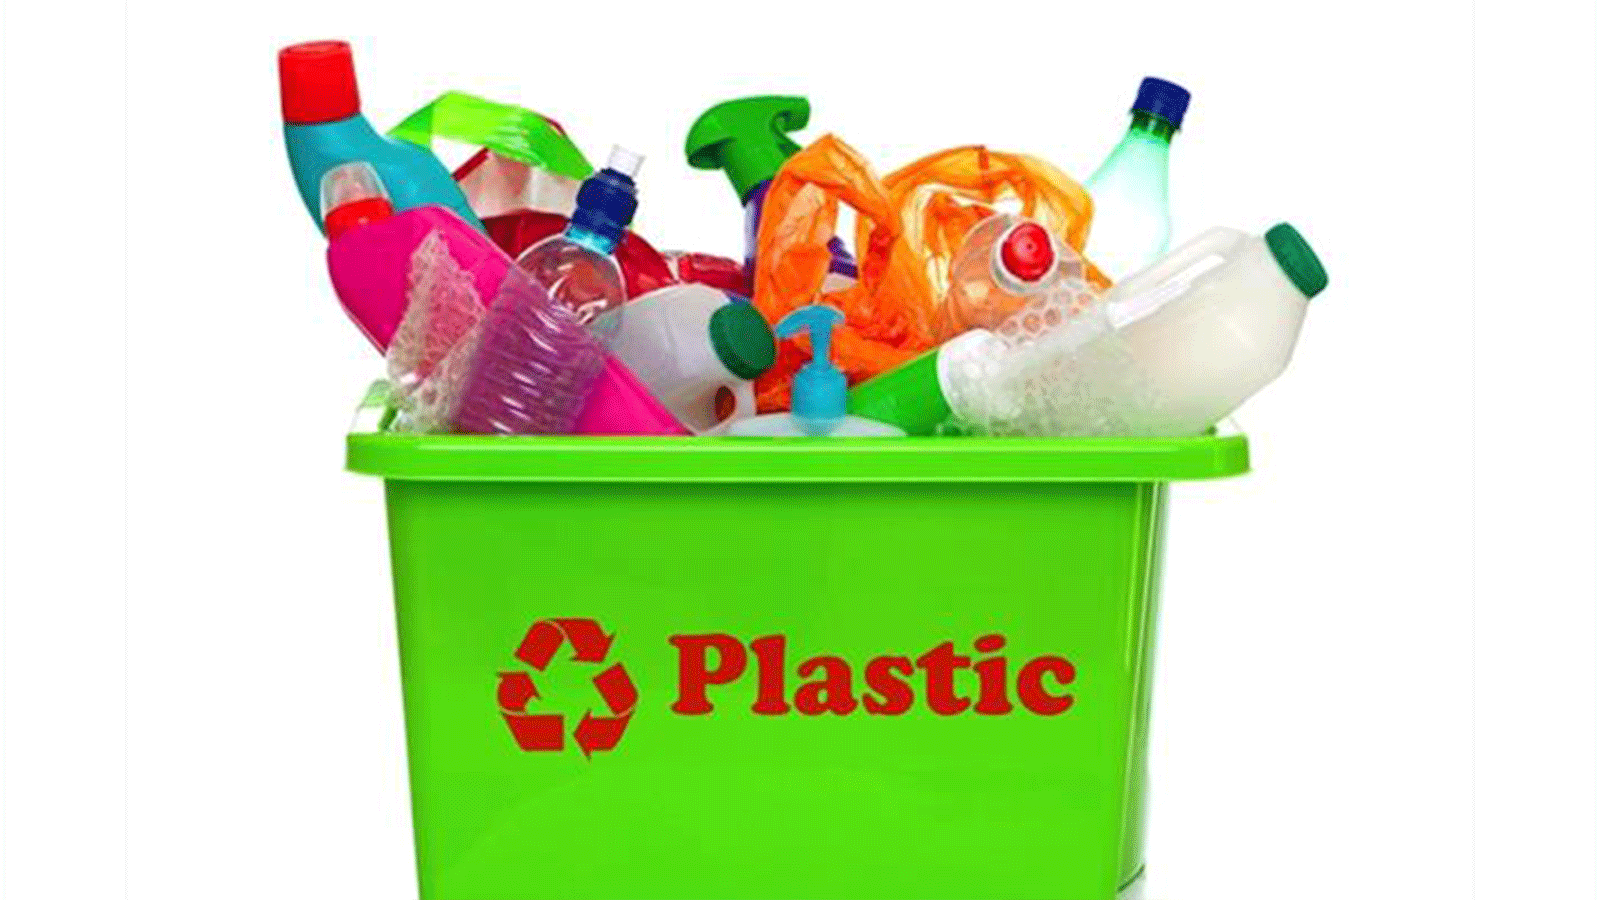 پلاستیک در زندگی روزمره چه کاربردی دارد؟